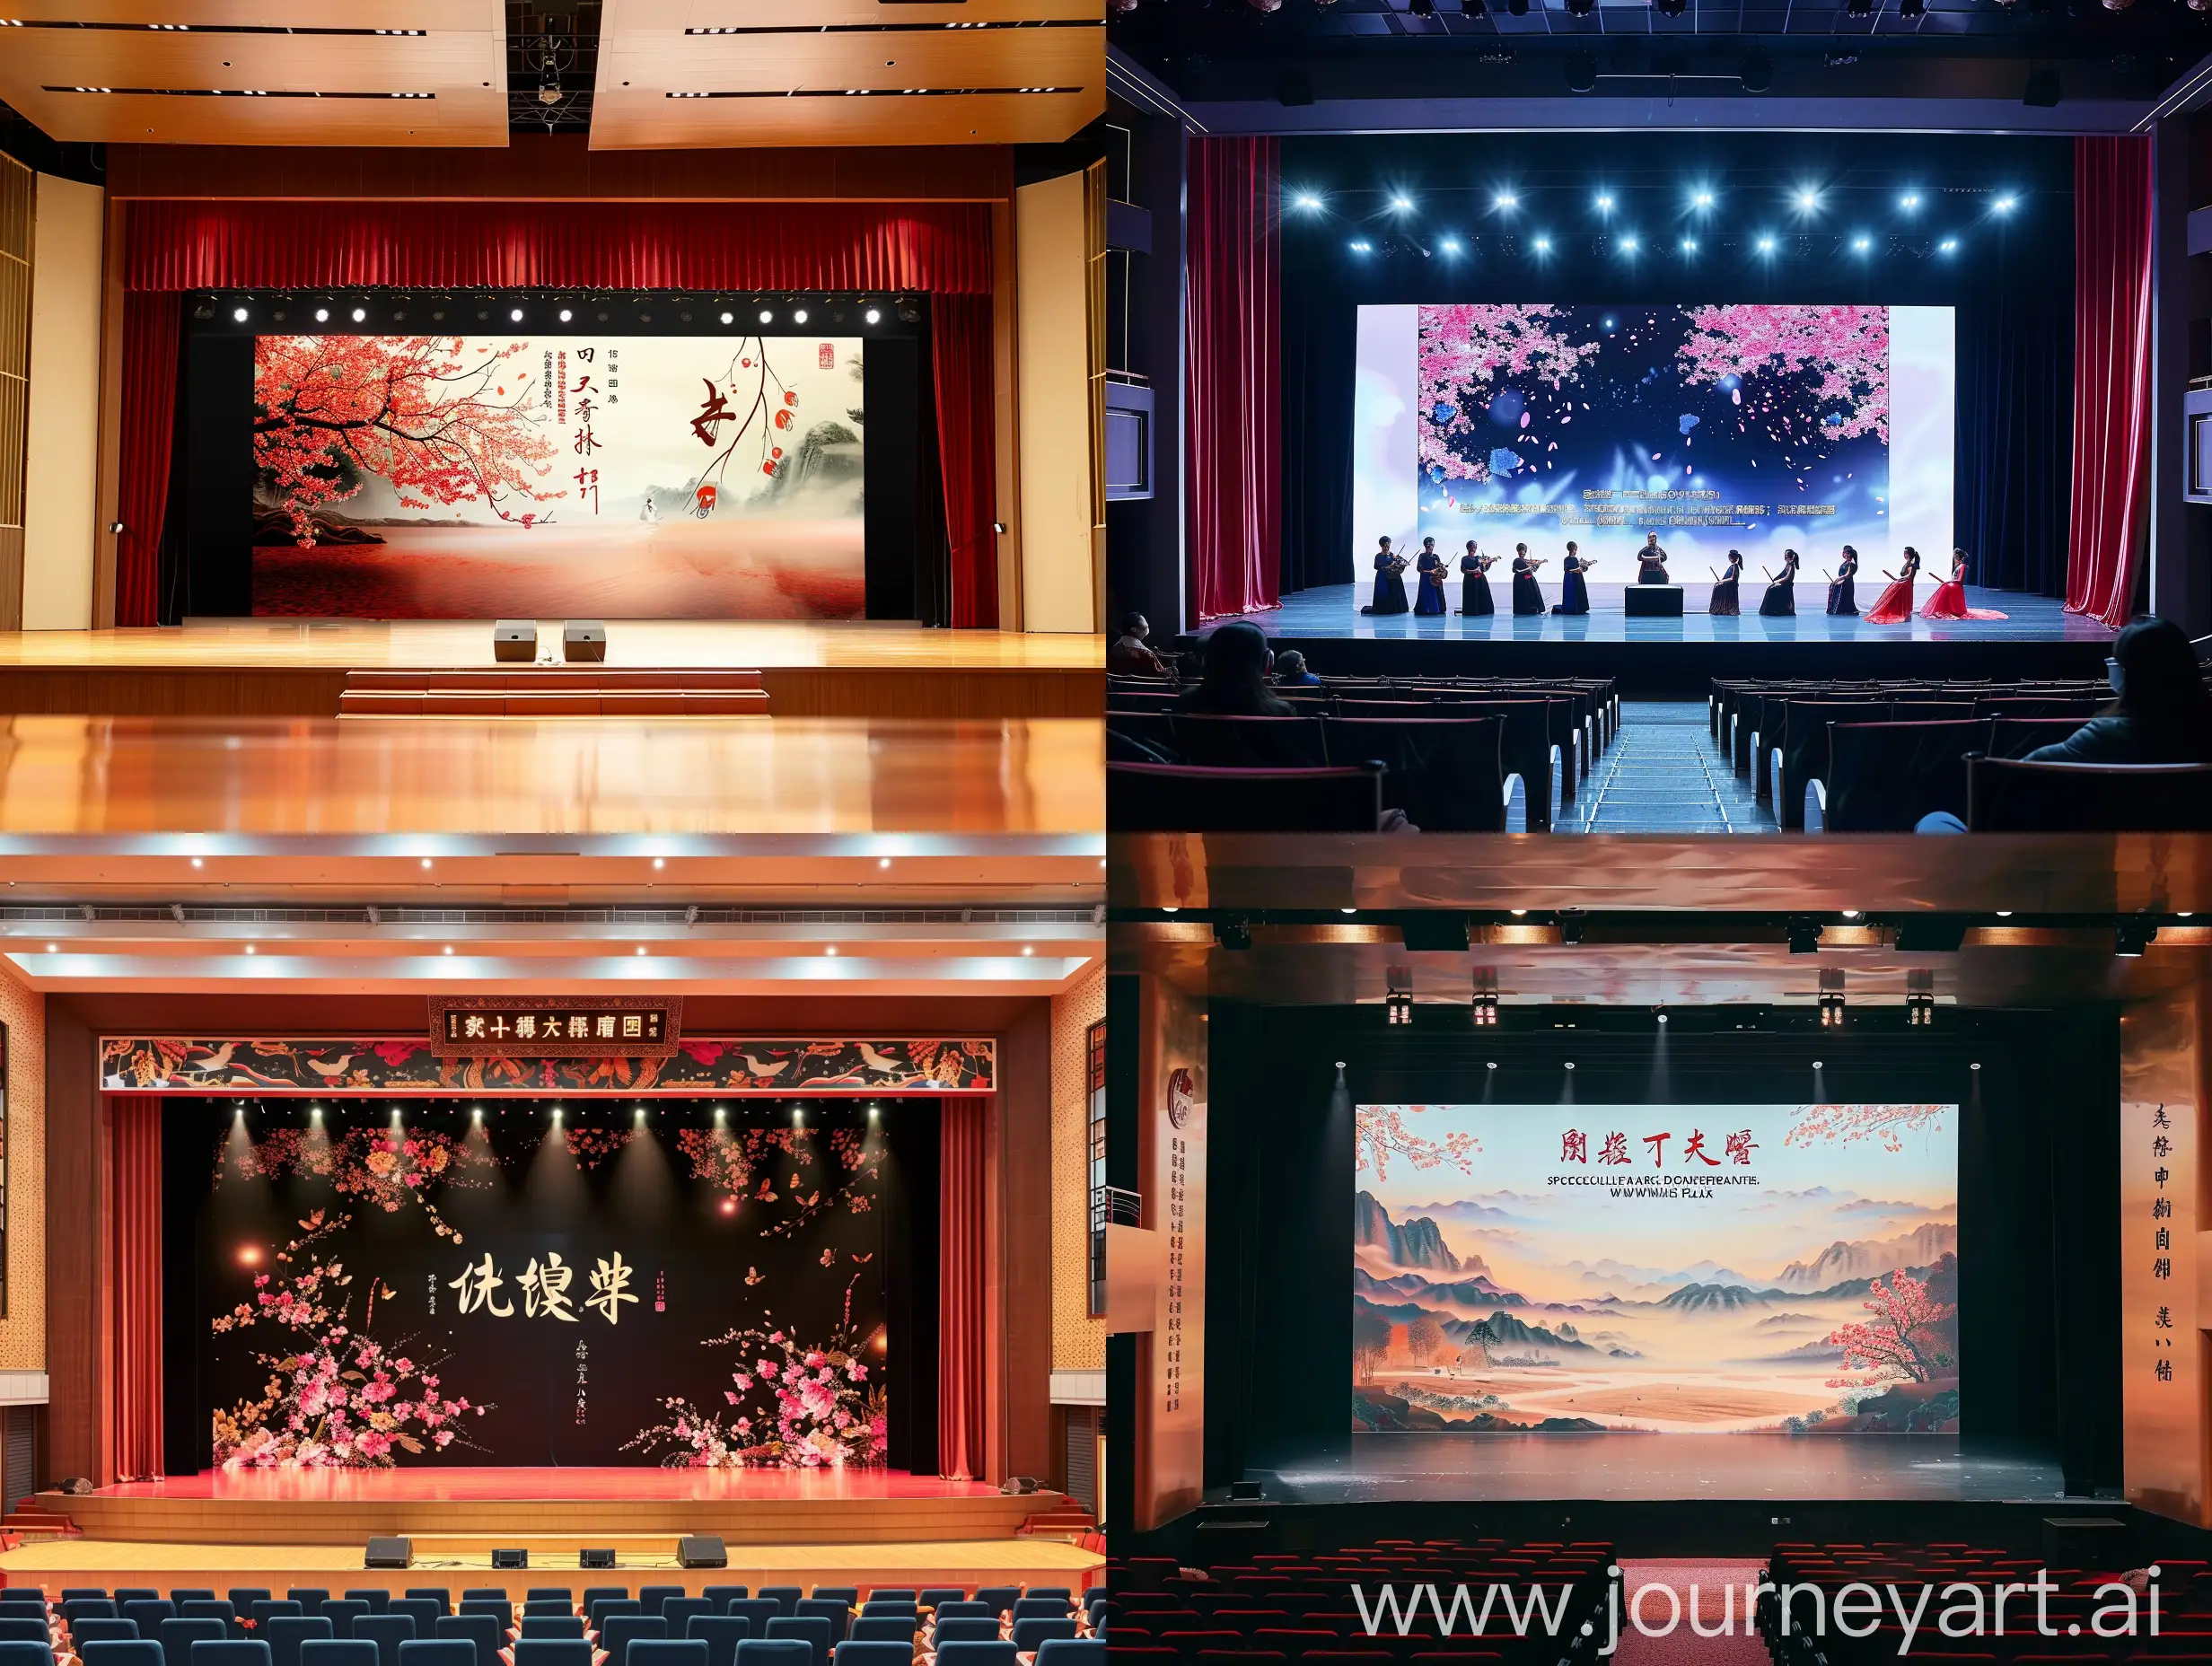 请设计并生成一张舞台大屏幕背景图，图上主题文字是“武汉市青少年宫文艺部教师专场演出”。演出的主要节目是美声声乐和器乐。